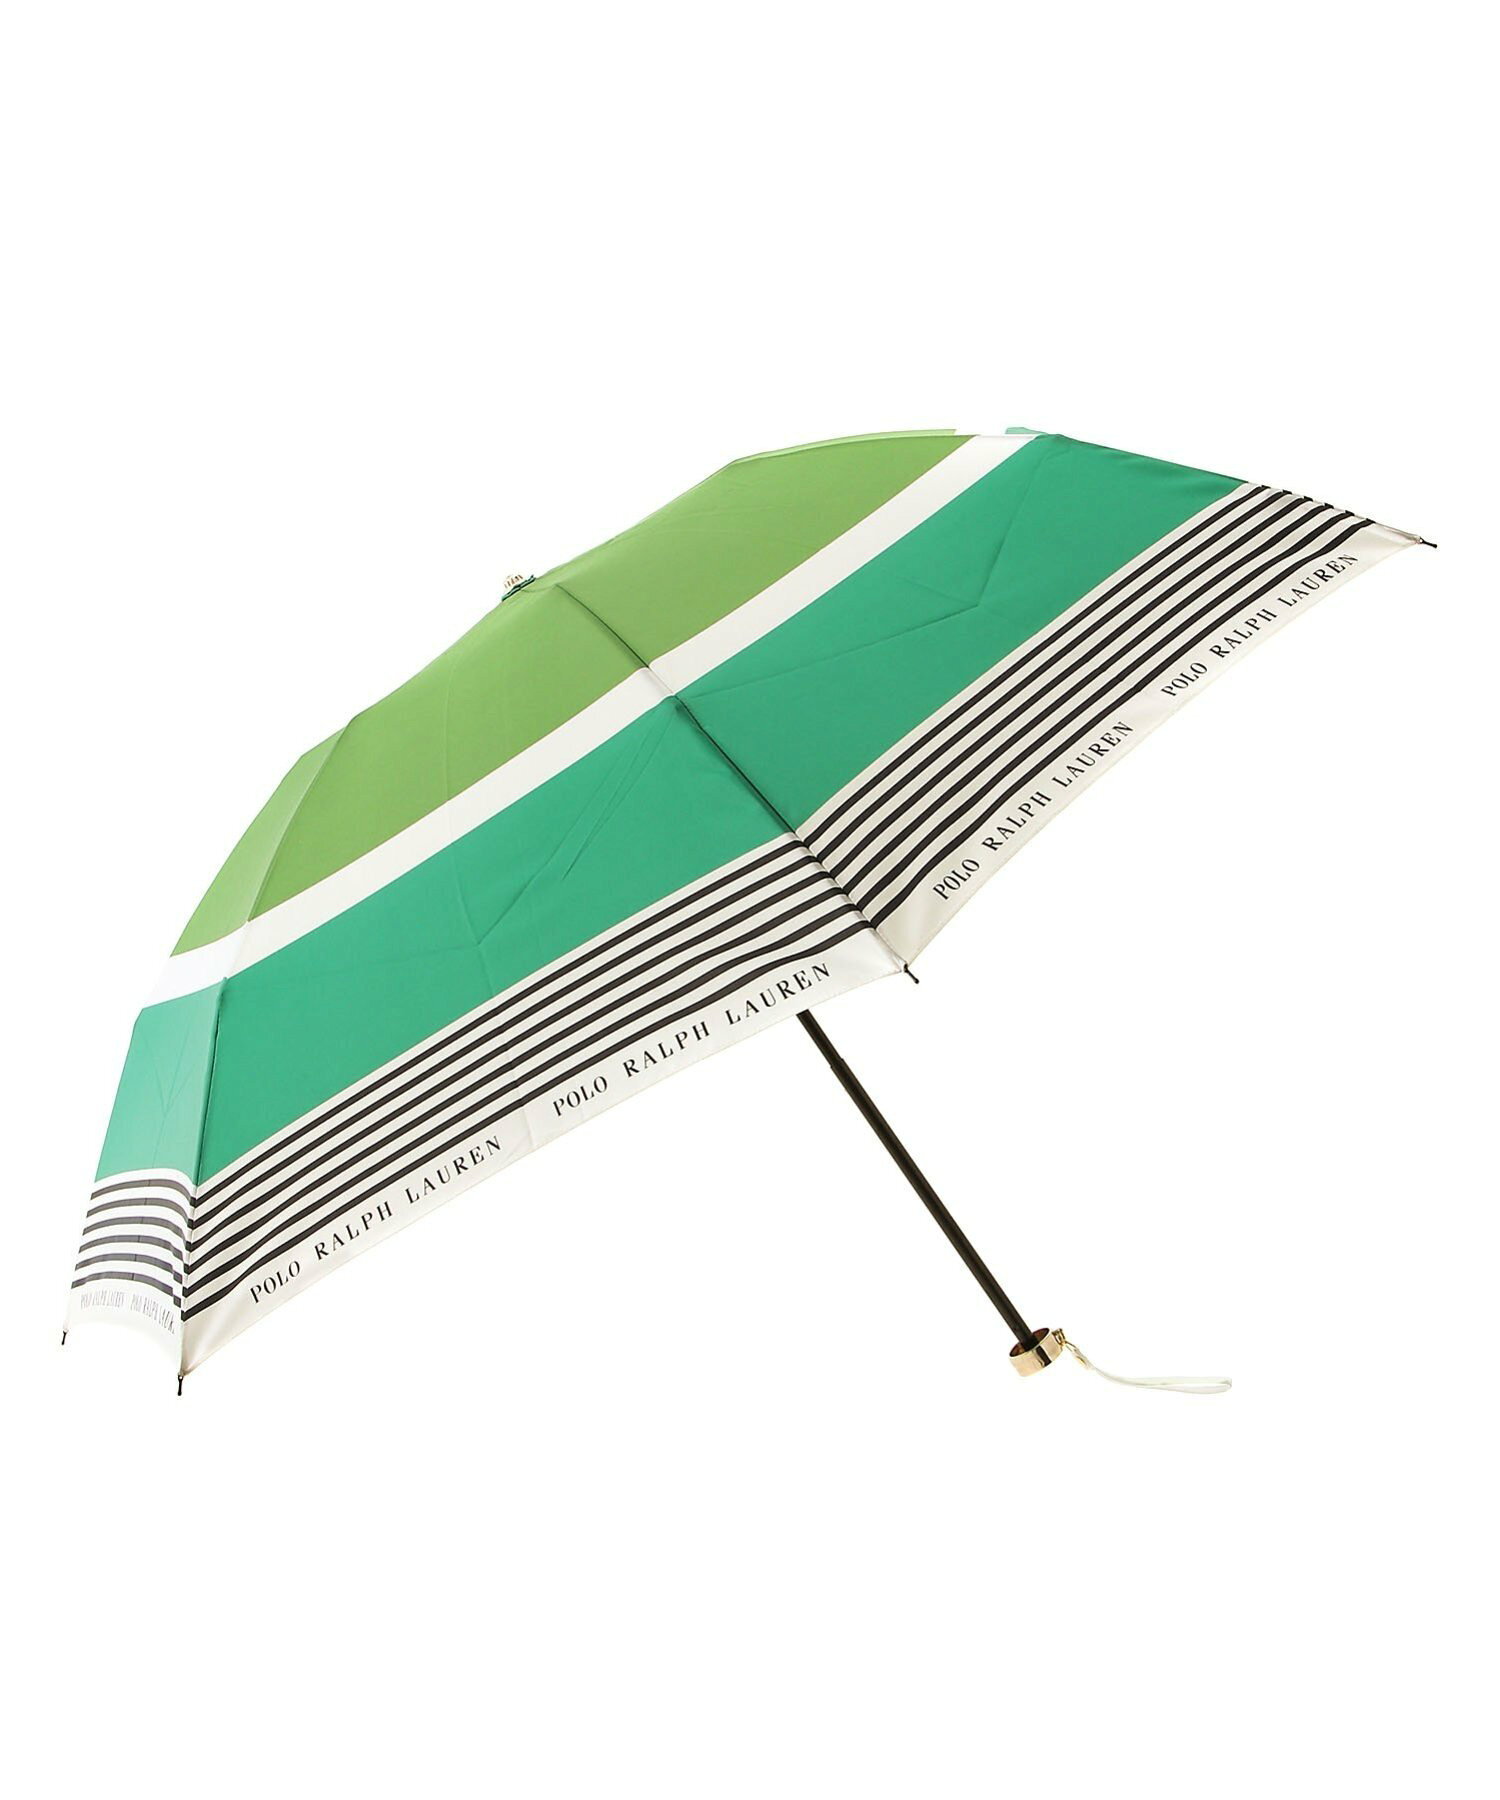 POLO RALPH LAUREN (ポロ ラルフローレン) 雨傘 折りたたみ傘 レディース カラーボーダー 日本製